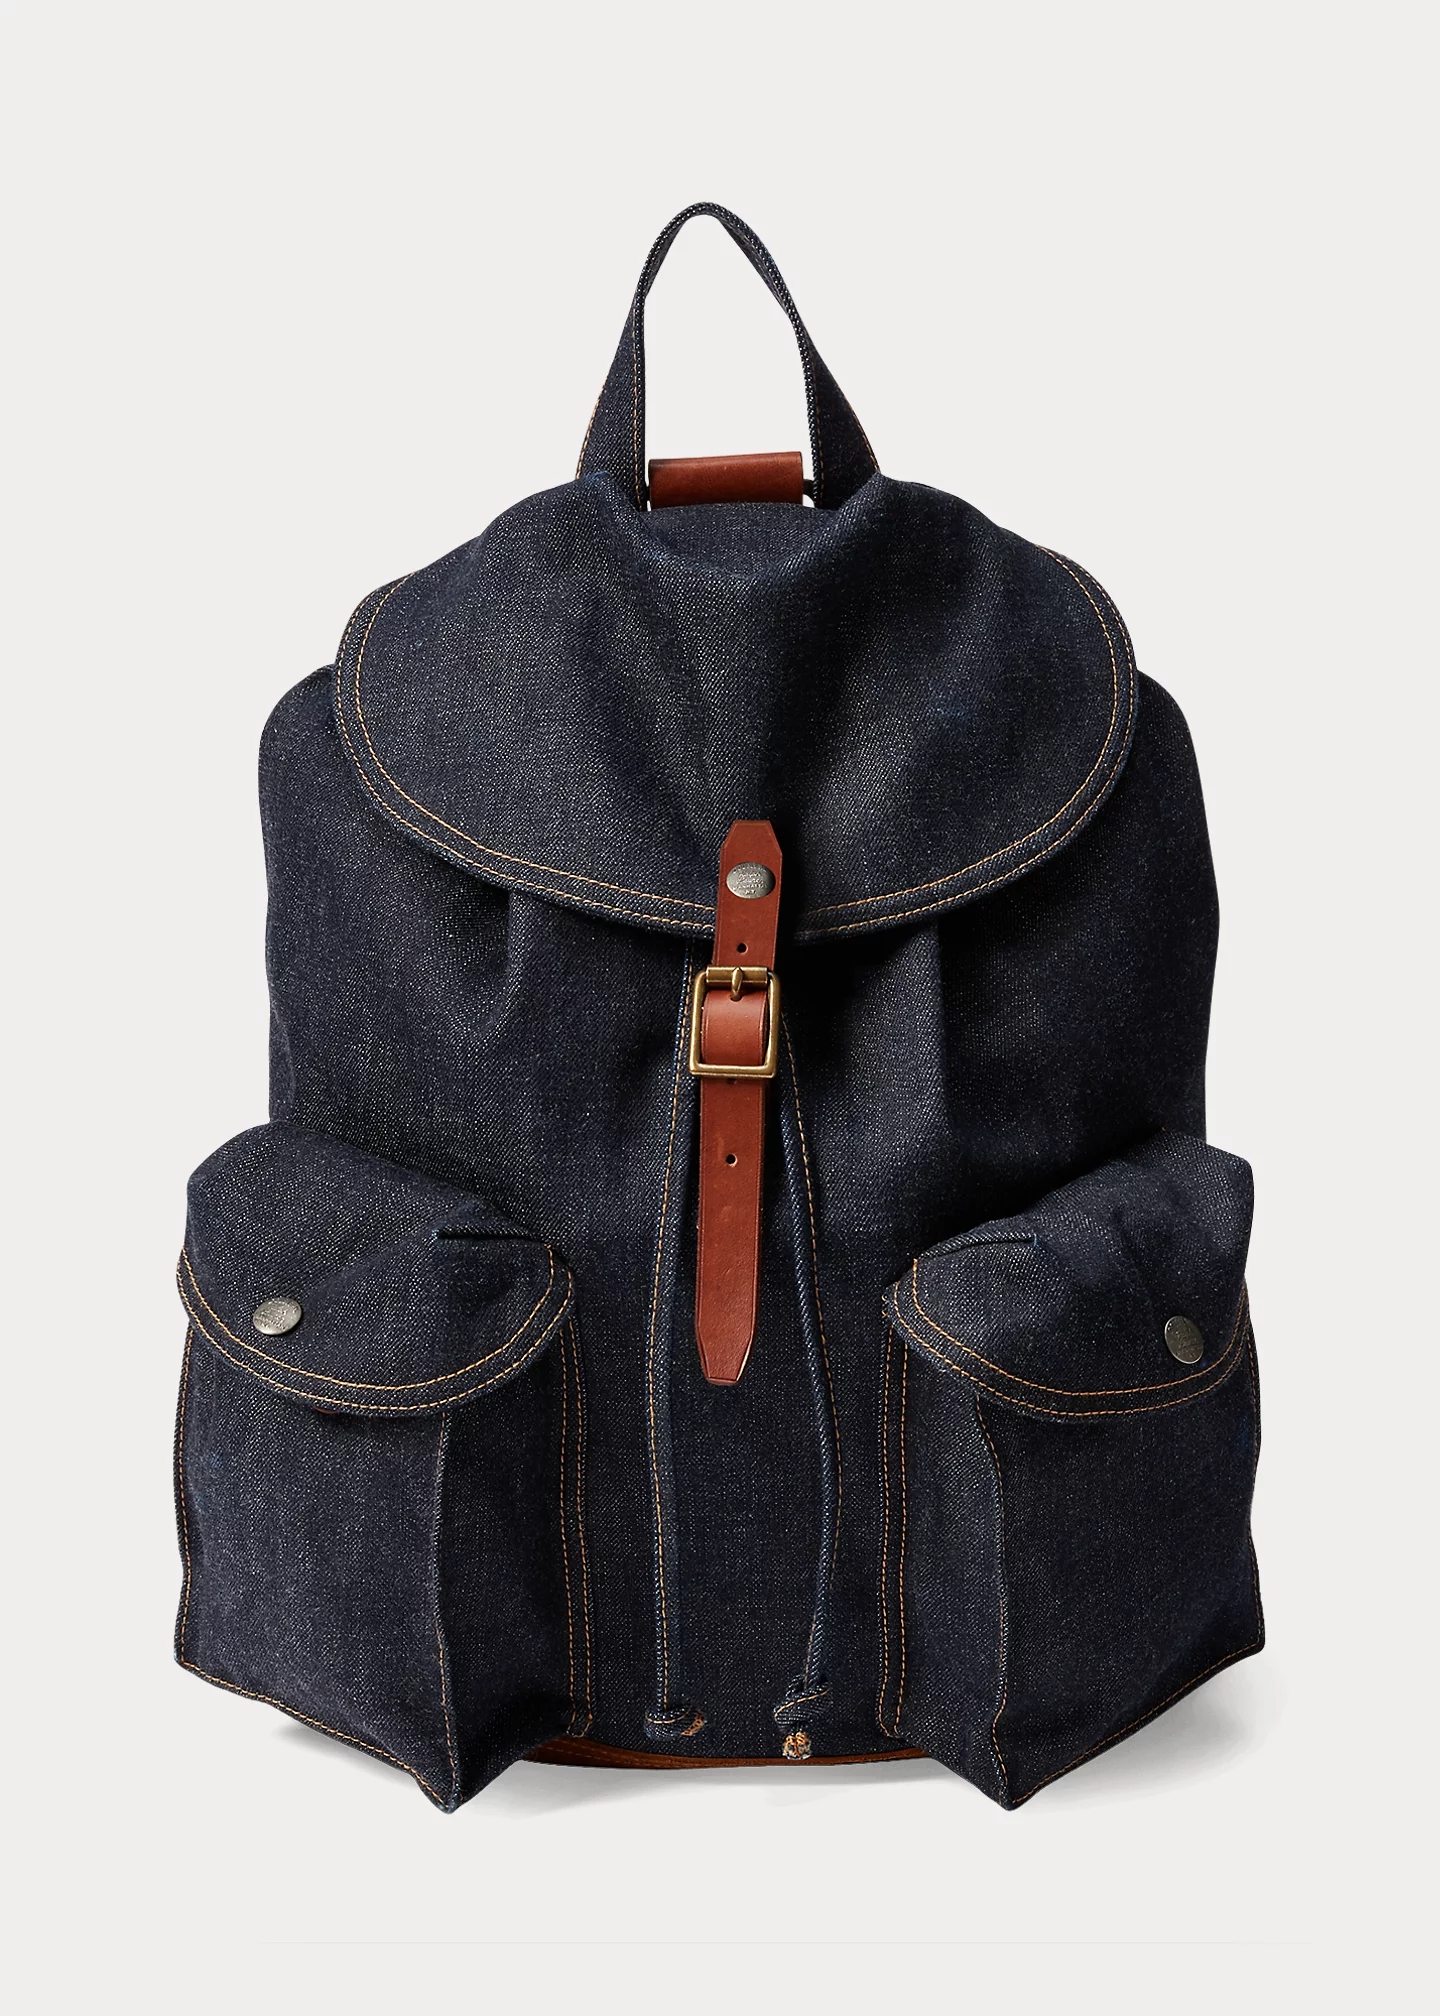 Brand bag Micro Love Bag